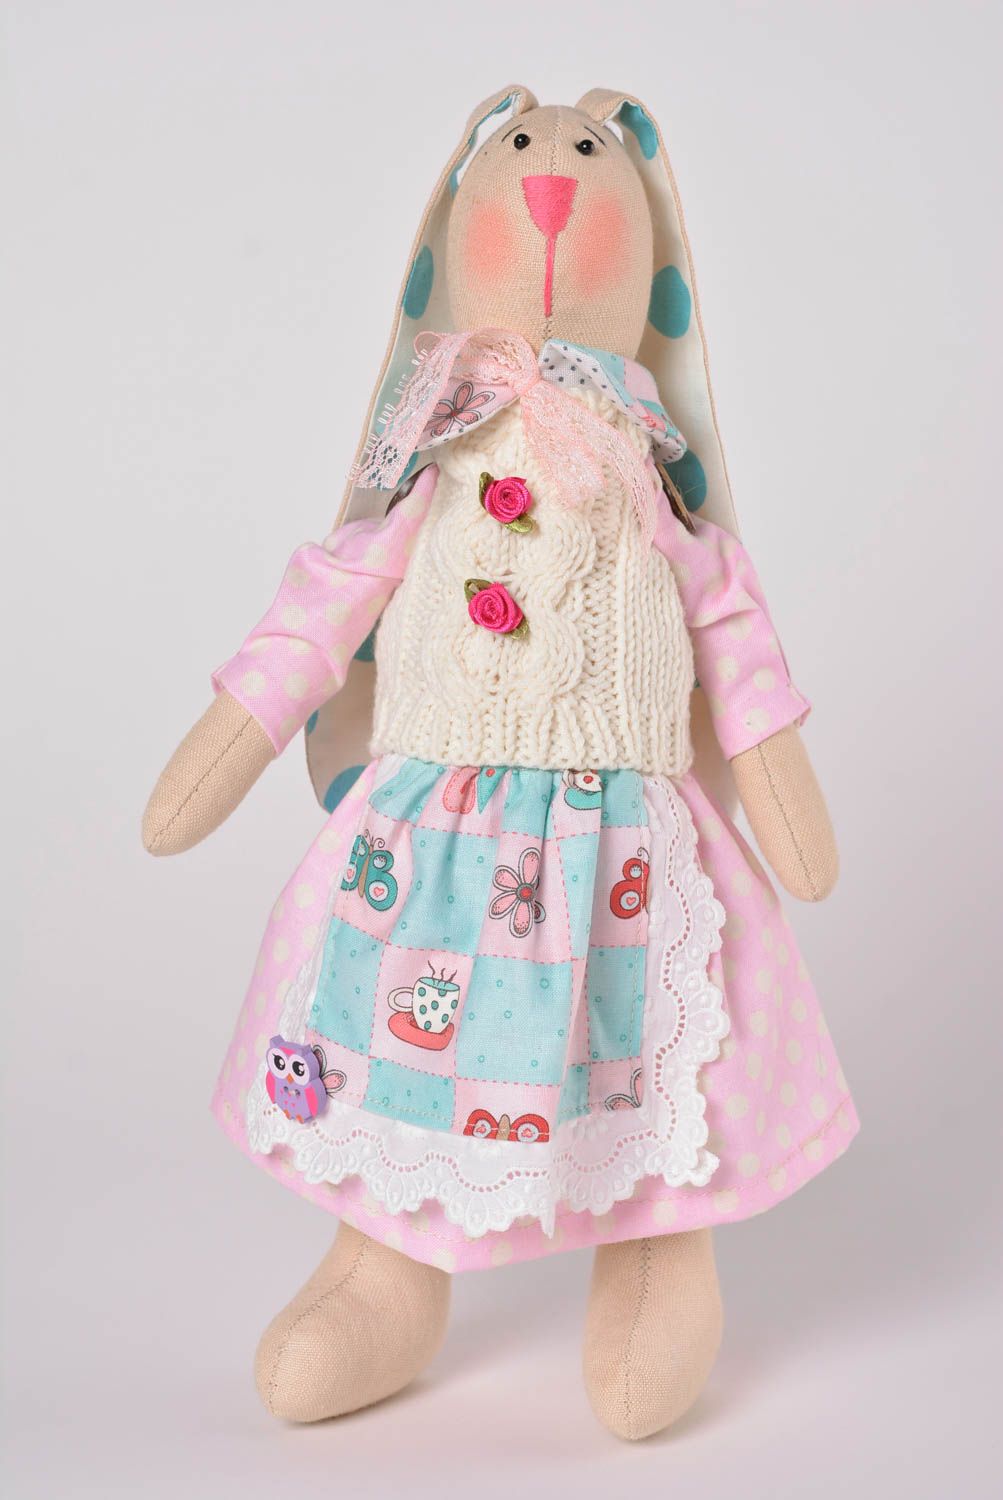 Игрушка заяц ручной работы авторская игрушка из ткани стильный подарок ребенку фото 1